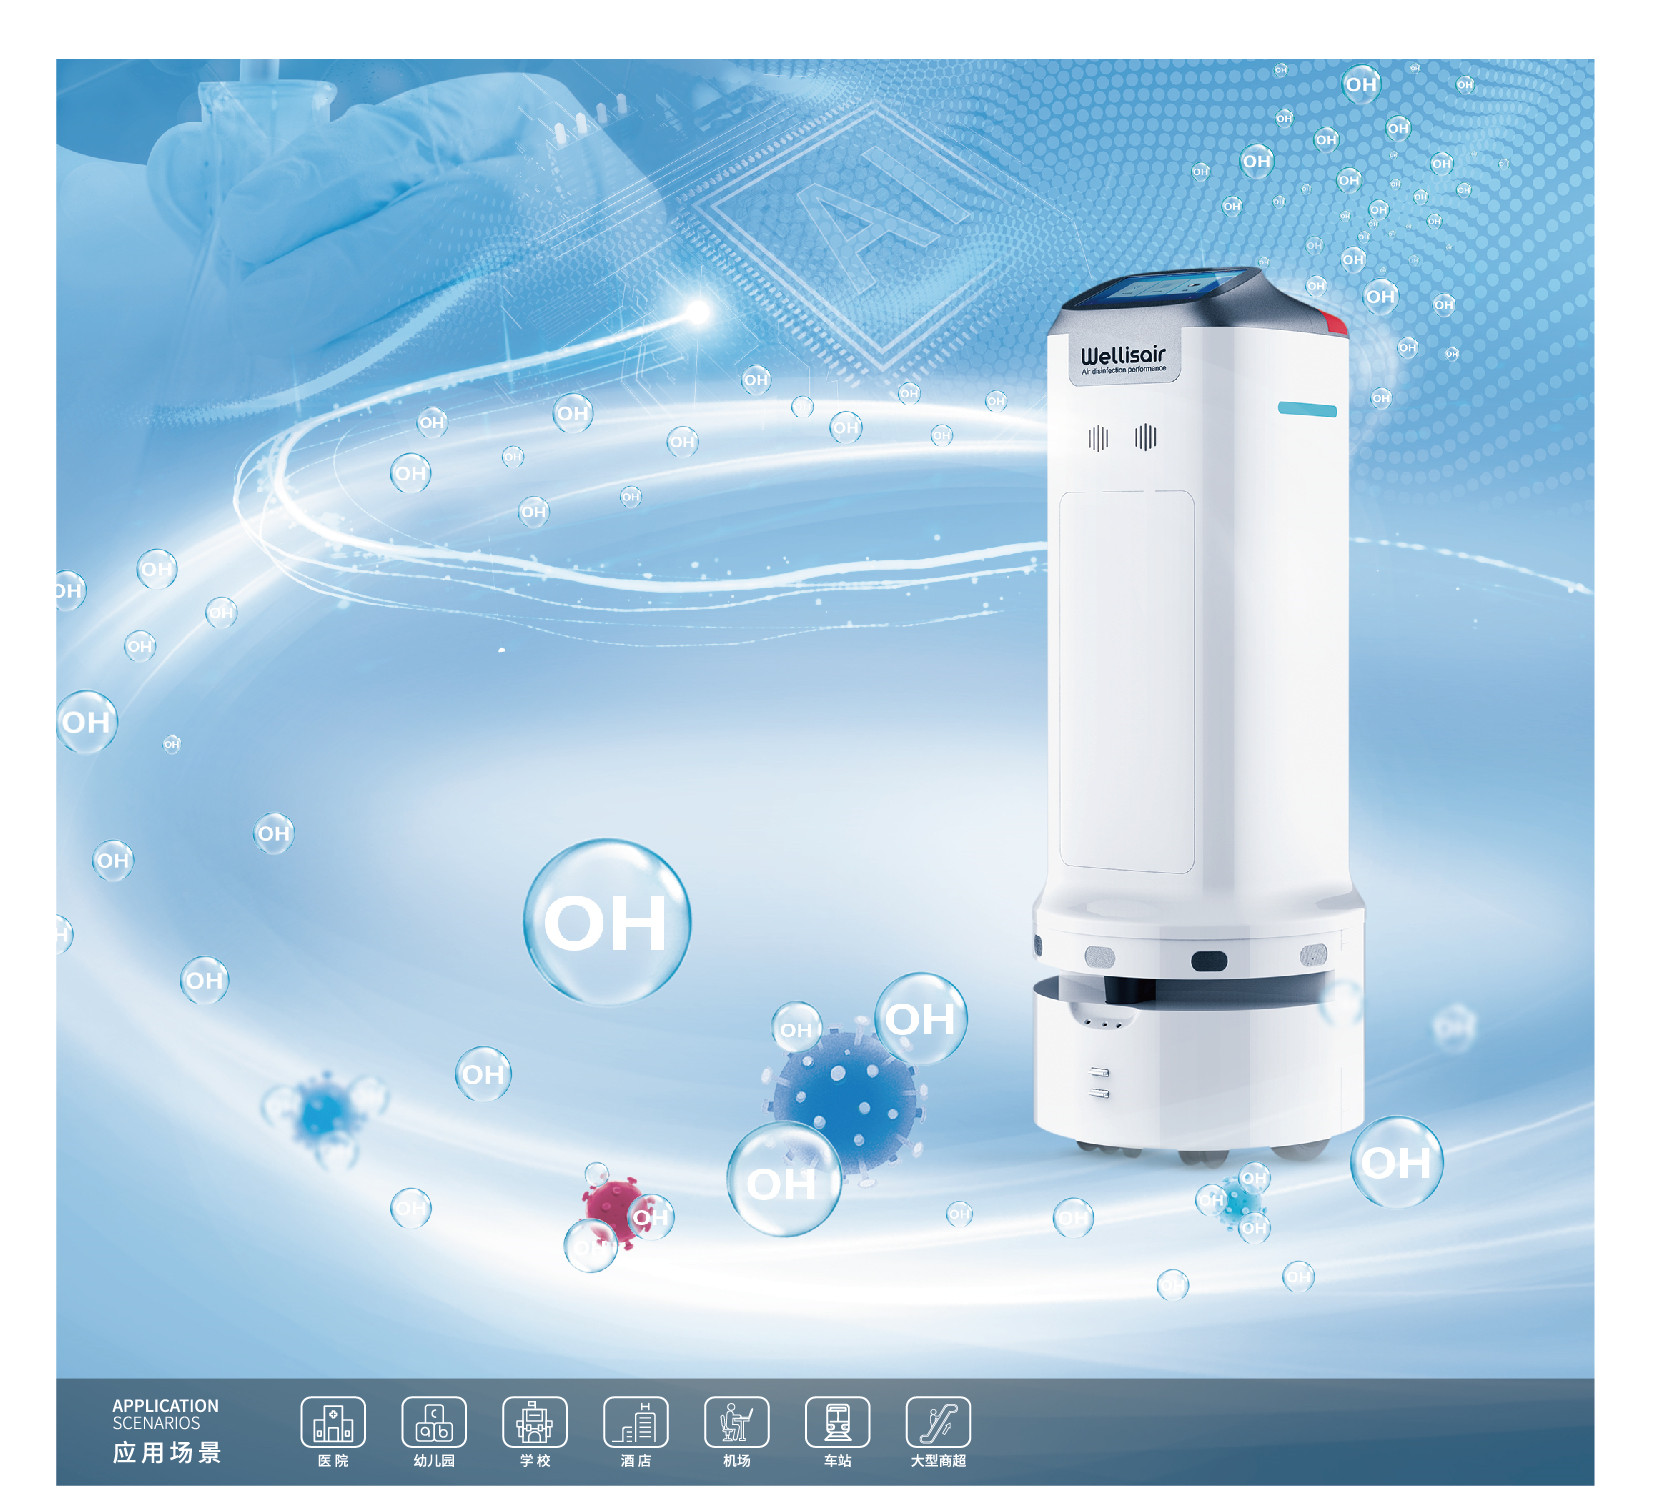 中城国网CCSGCC Wellisair robot CA01702021/S空气消毒机器人